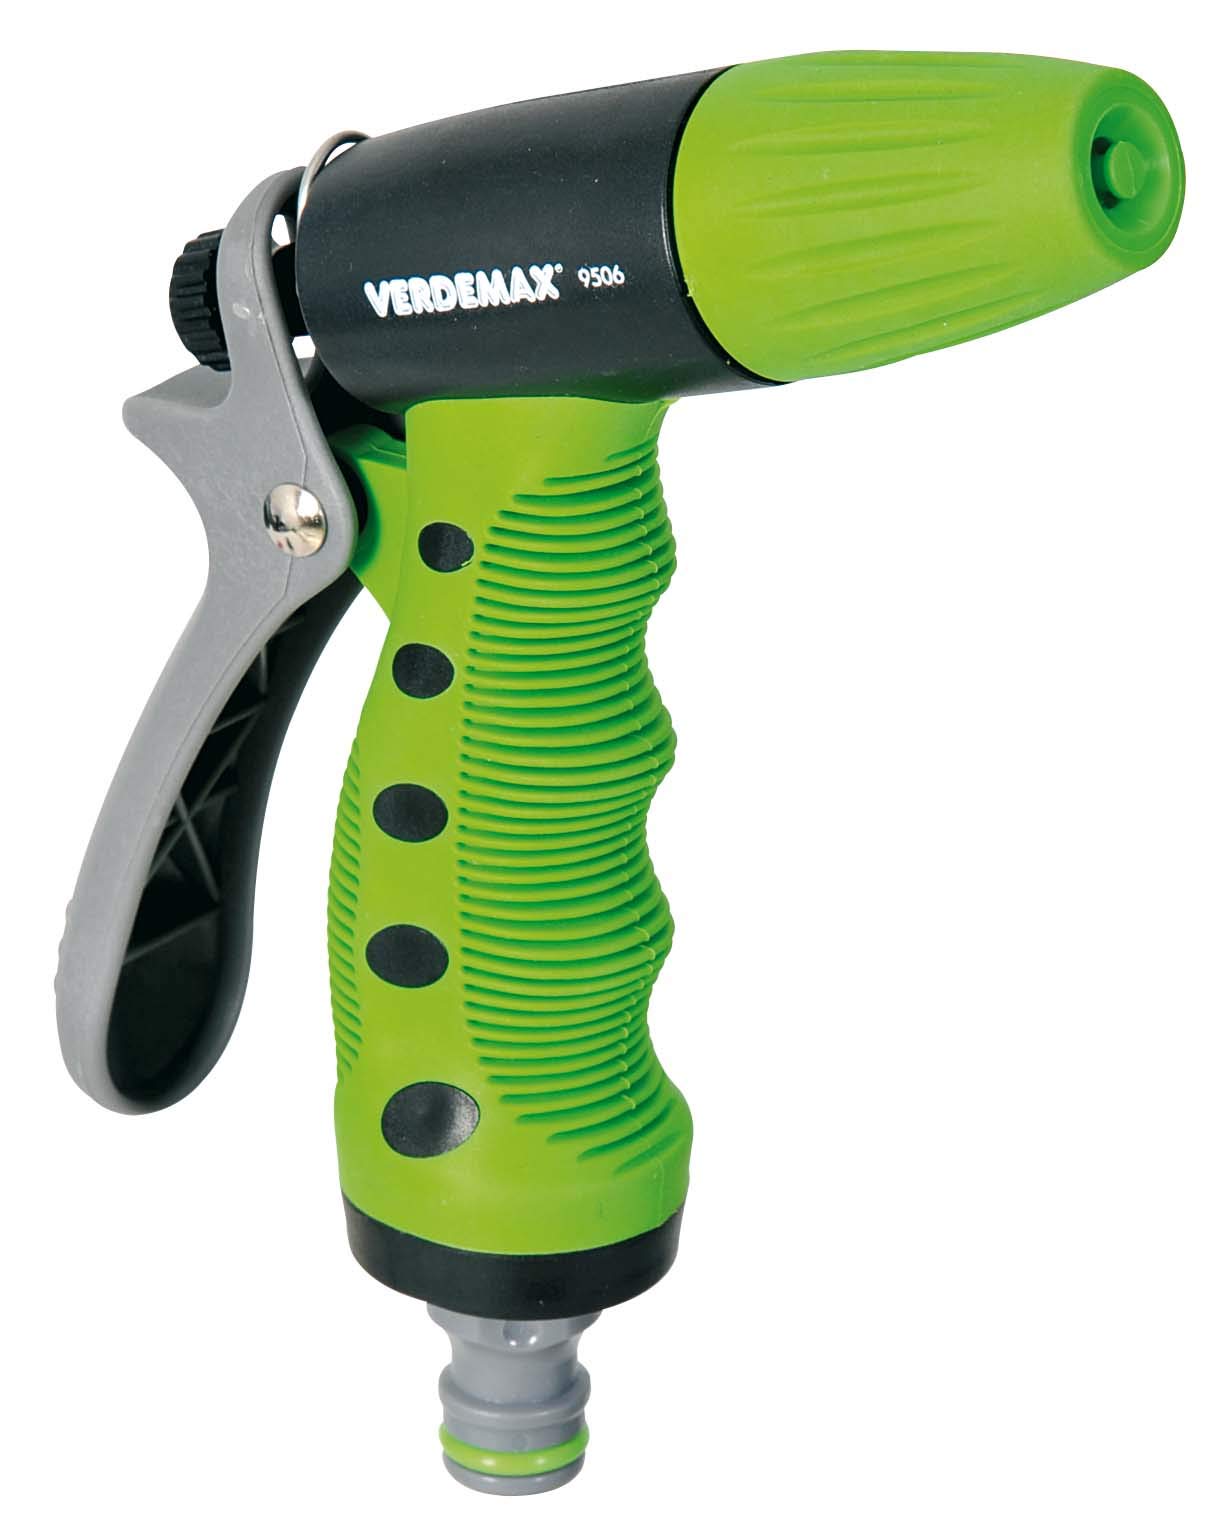 Pistola per irrigazione a spruzzo regolabile - in plastica - Verdemax